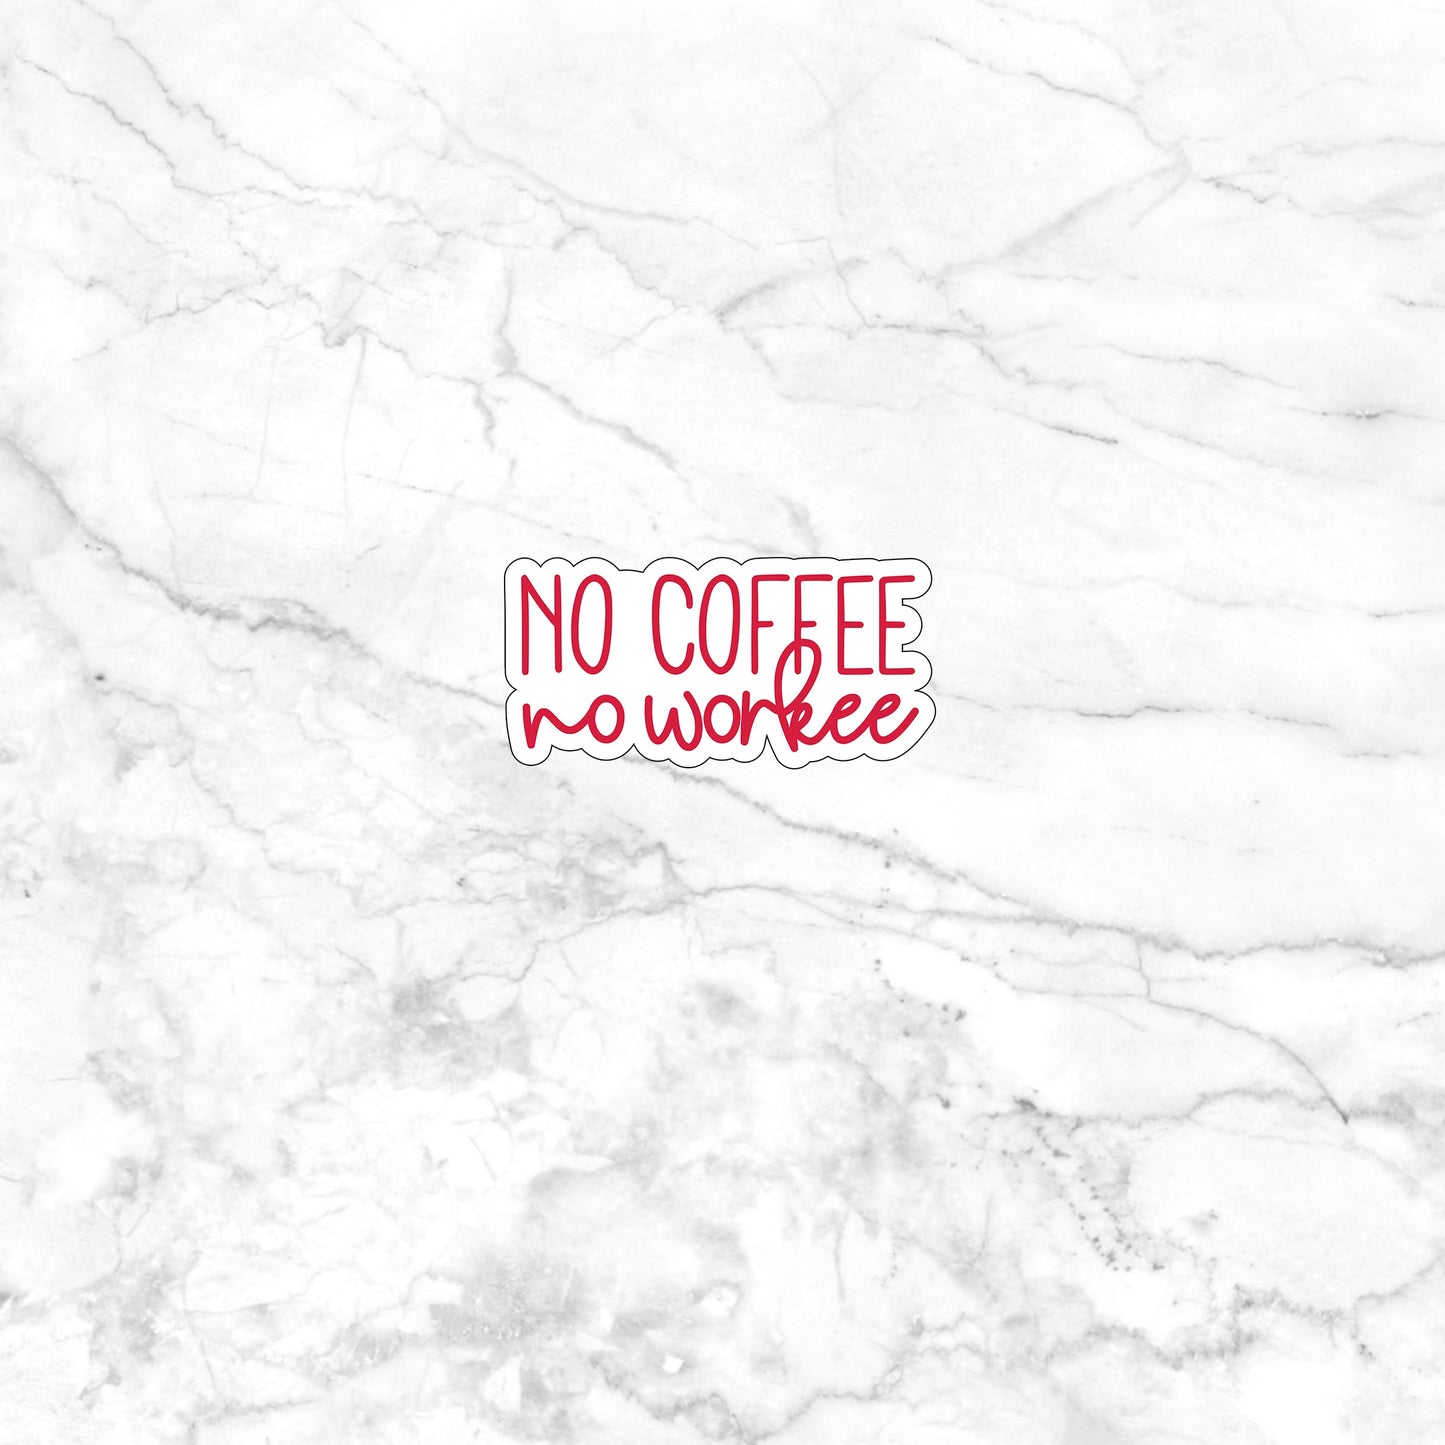 No coffee no workee  Sticker,  Vinyl sticker, laptop sticker, Tablet sticker